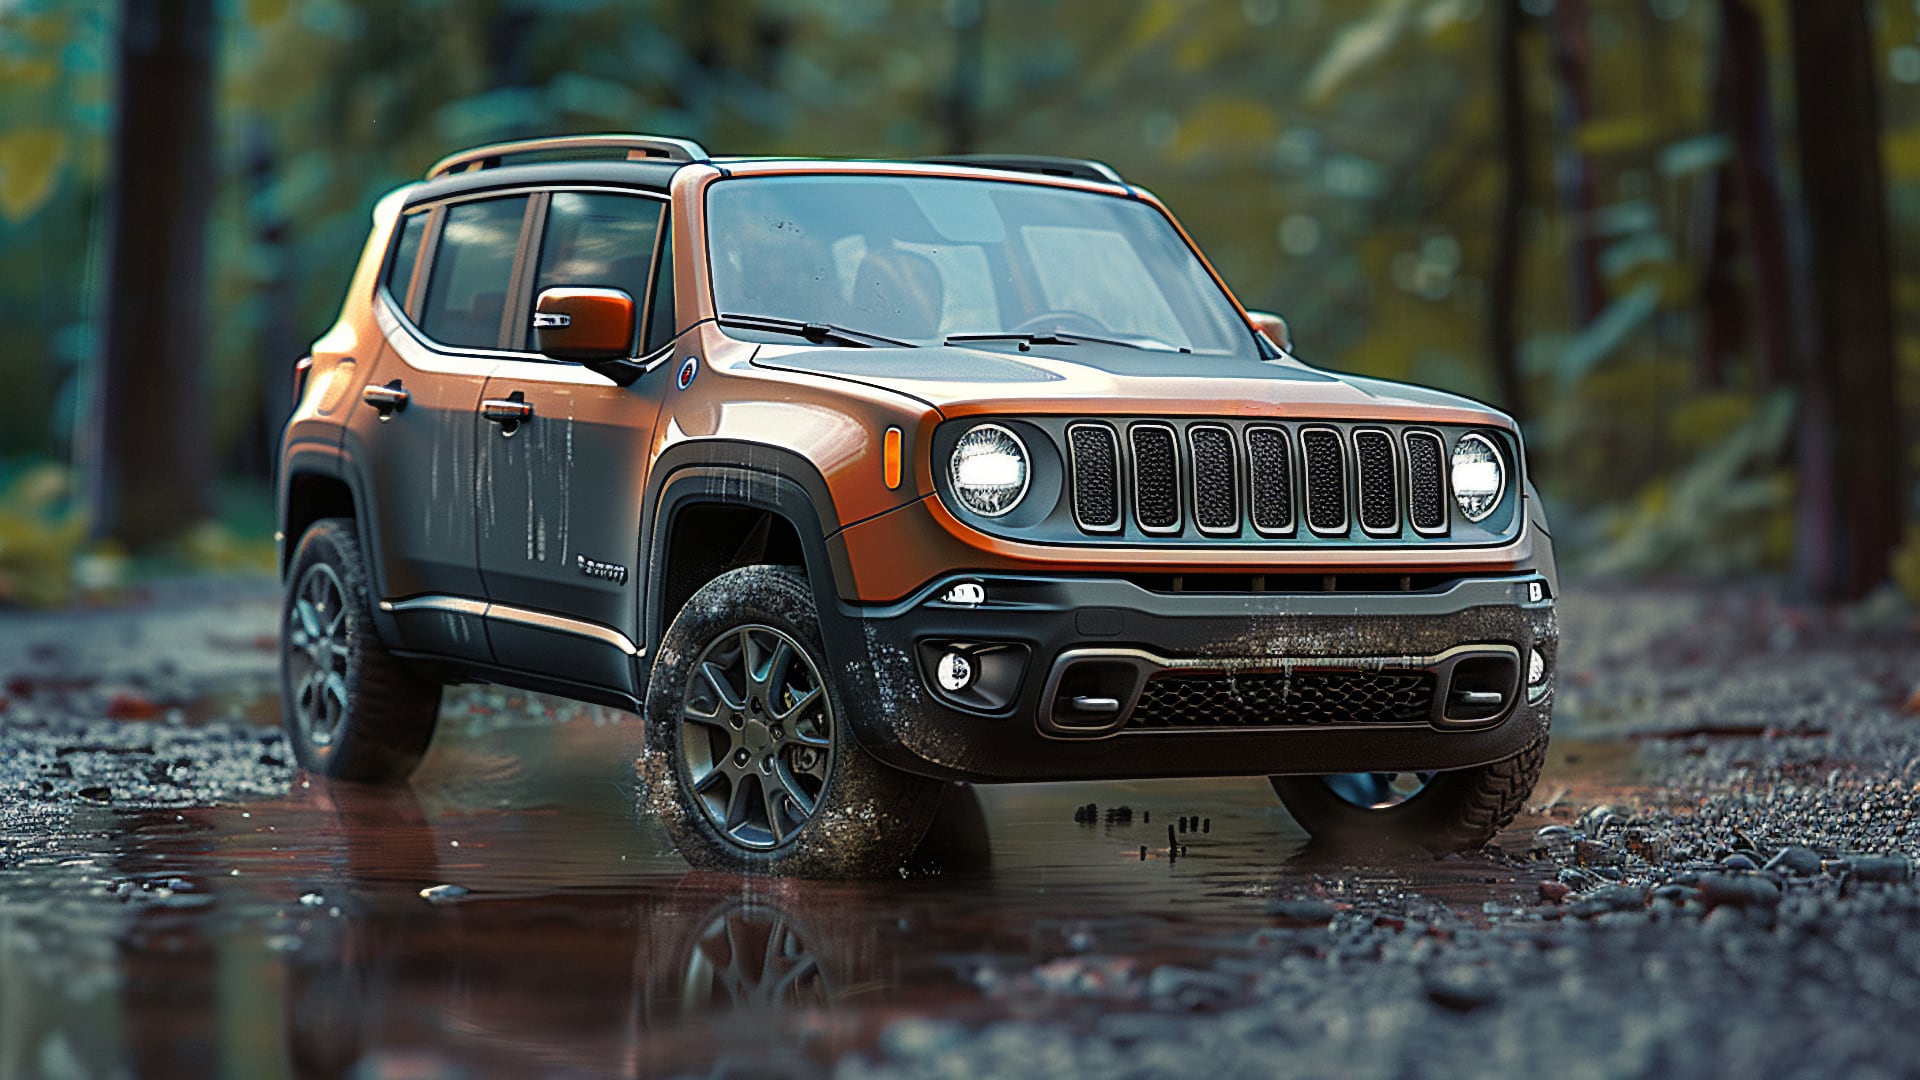 The 2020 Jeep Renegade navigates through a muddy terrain.